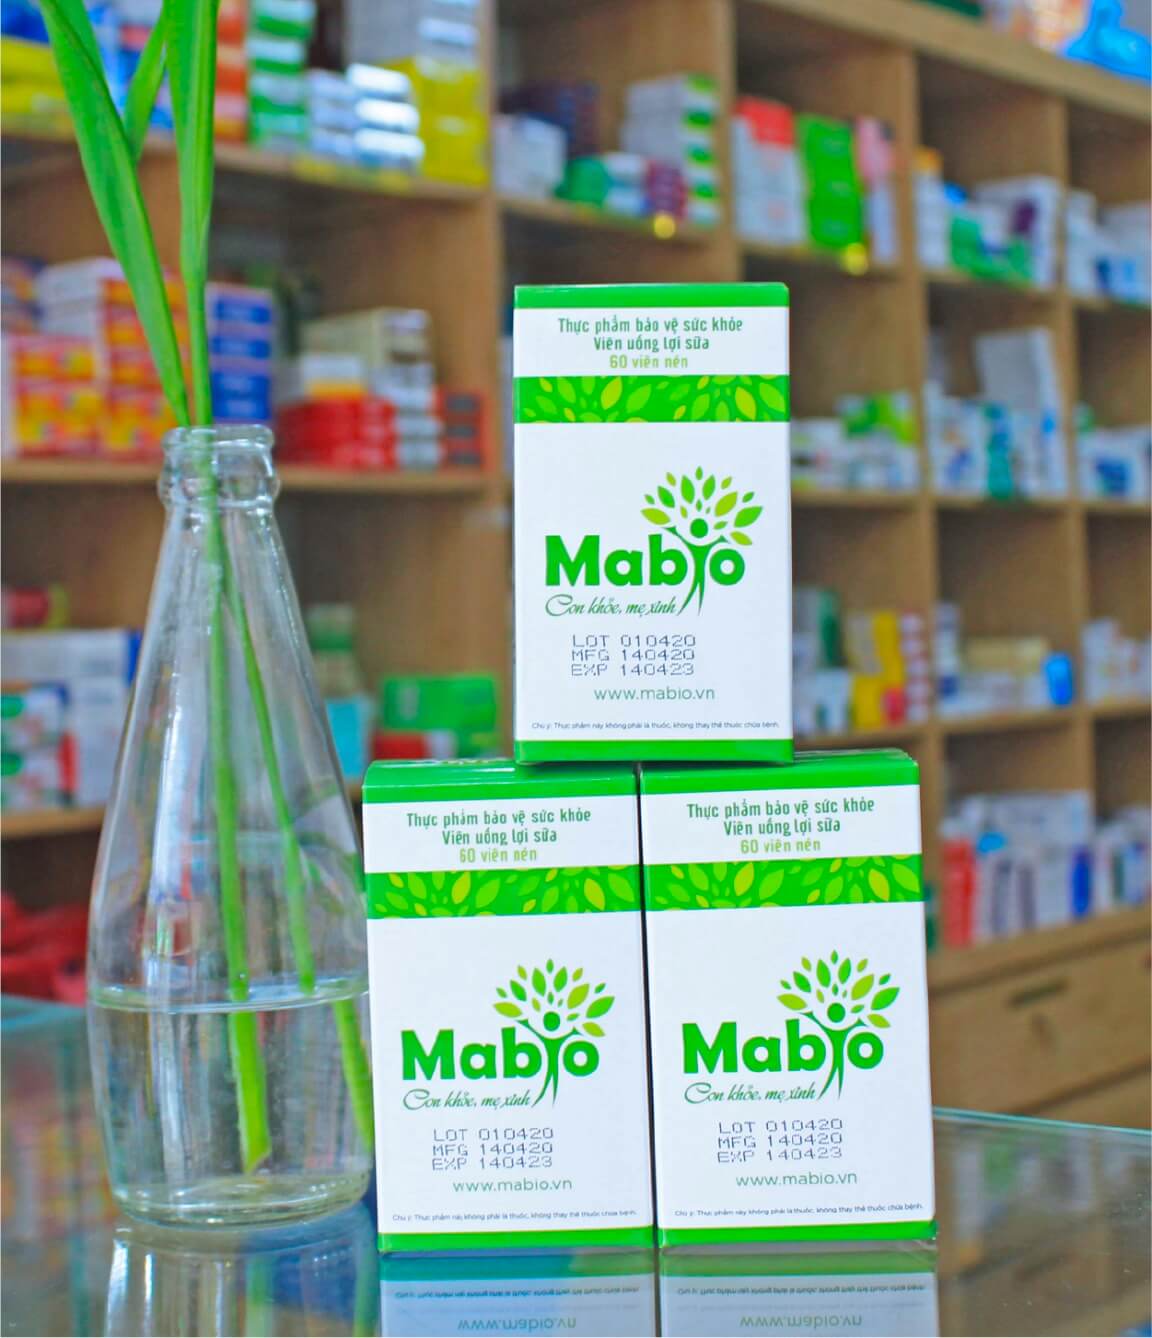 Viên uống lợi sữa Mabio có bán ở hiệu thuốc không hình 6